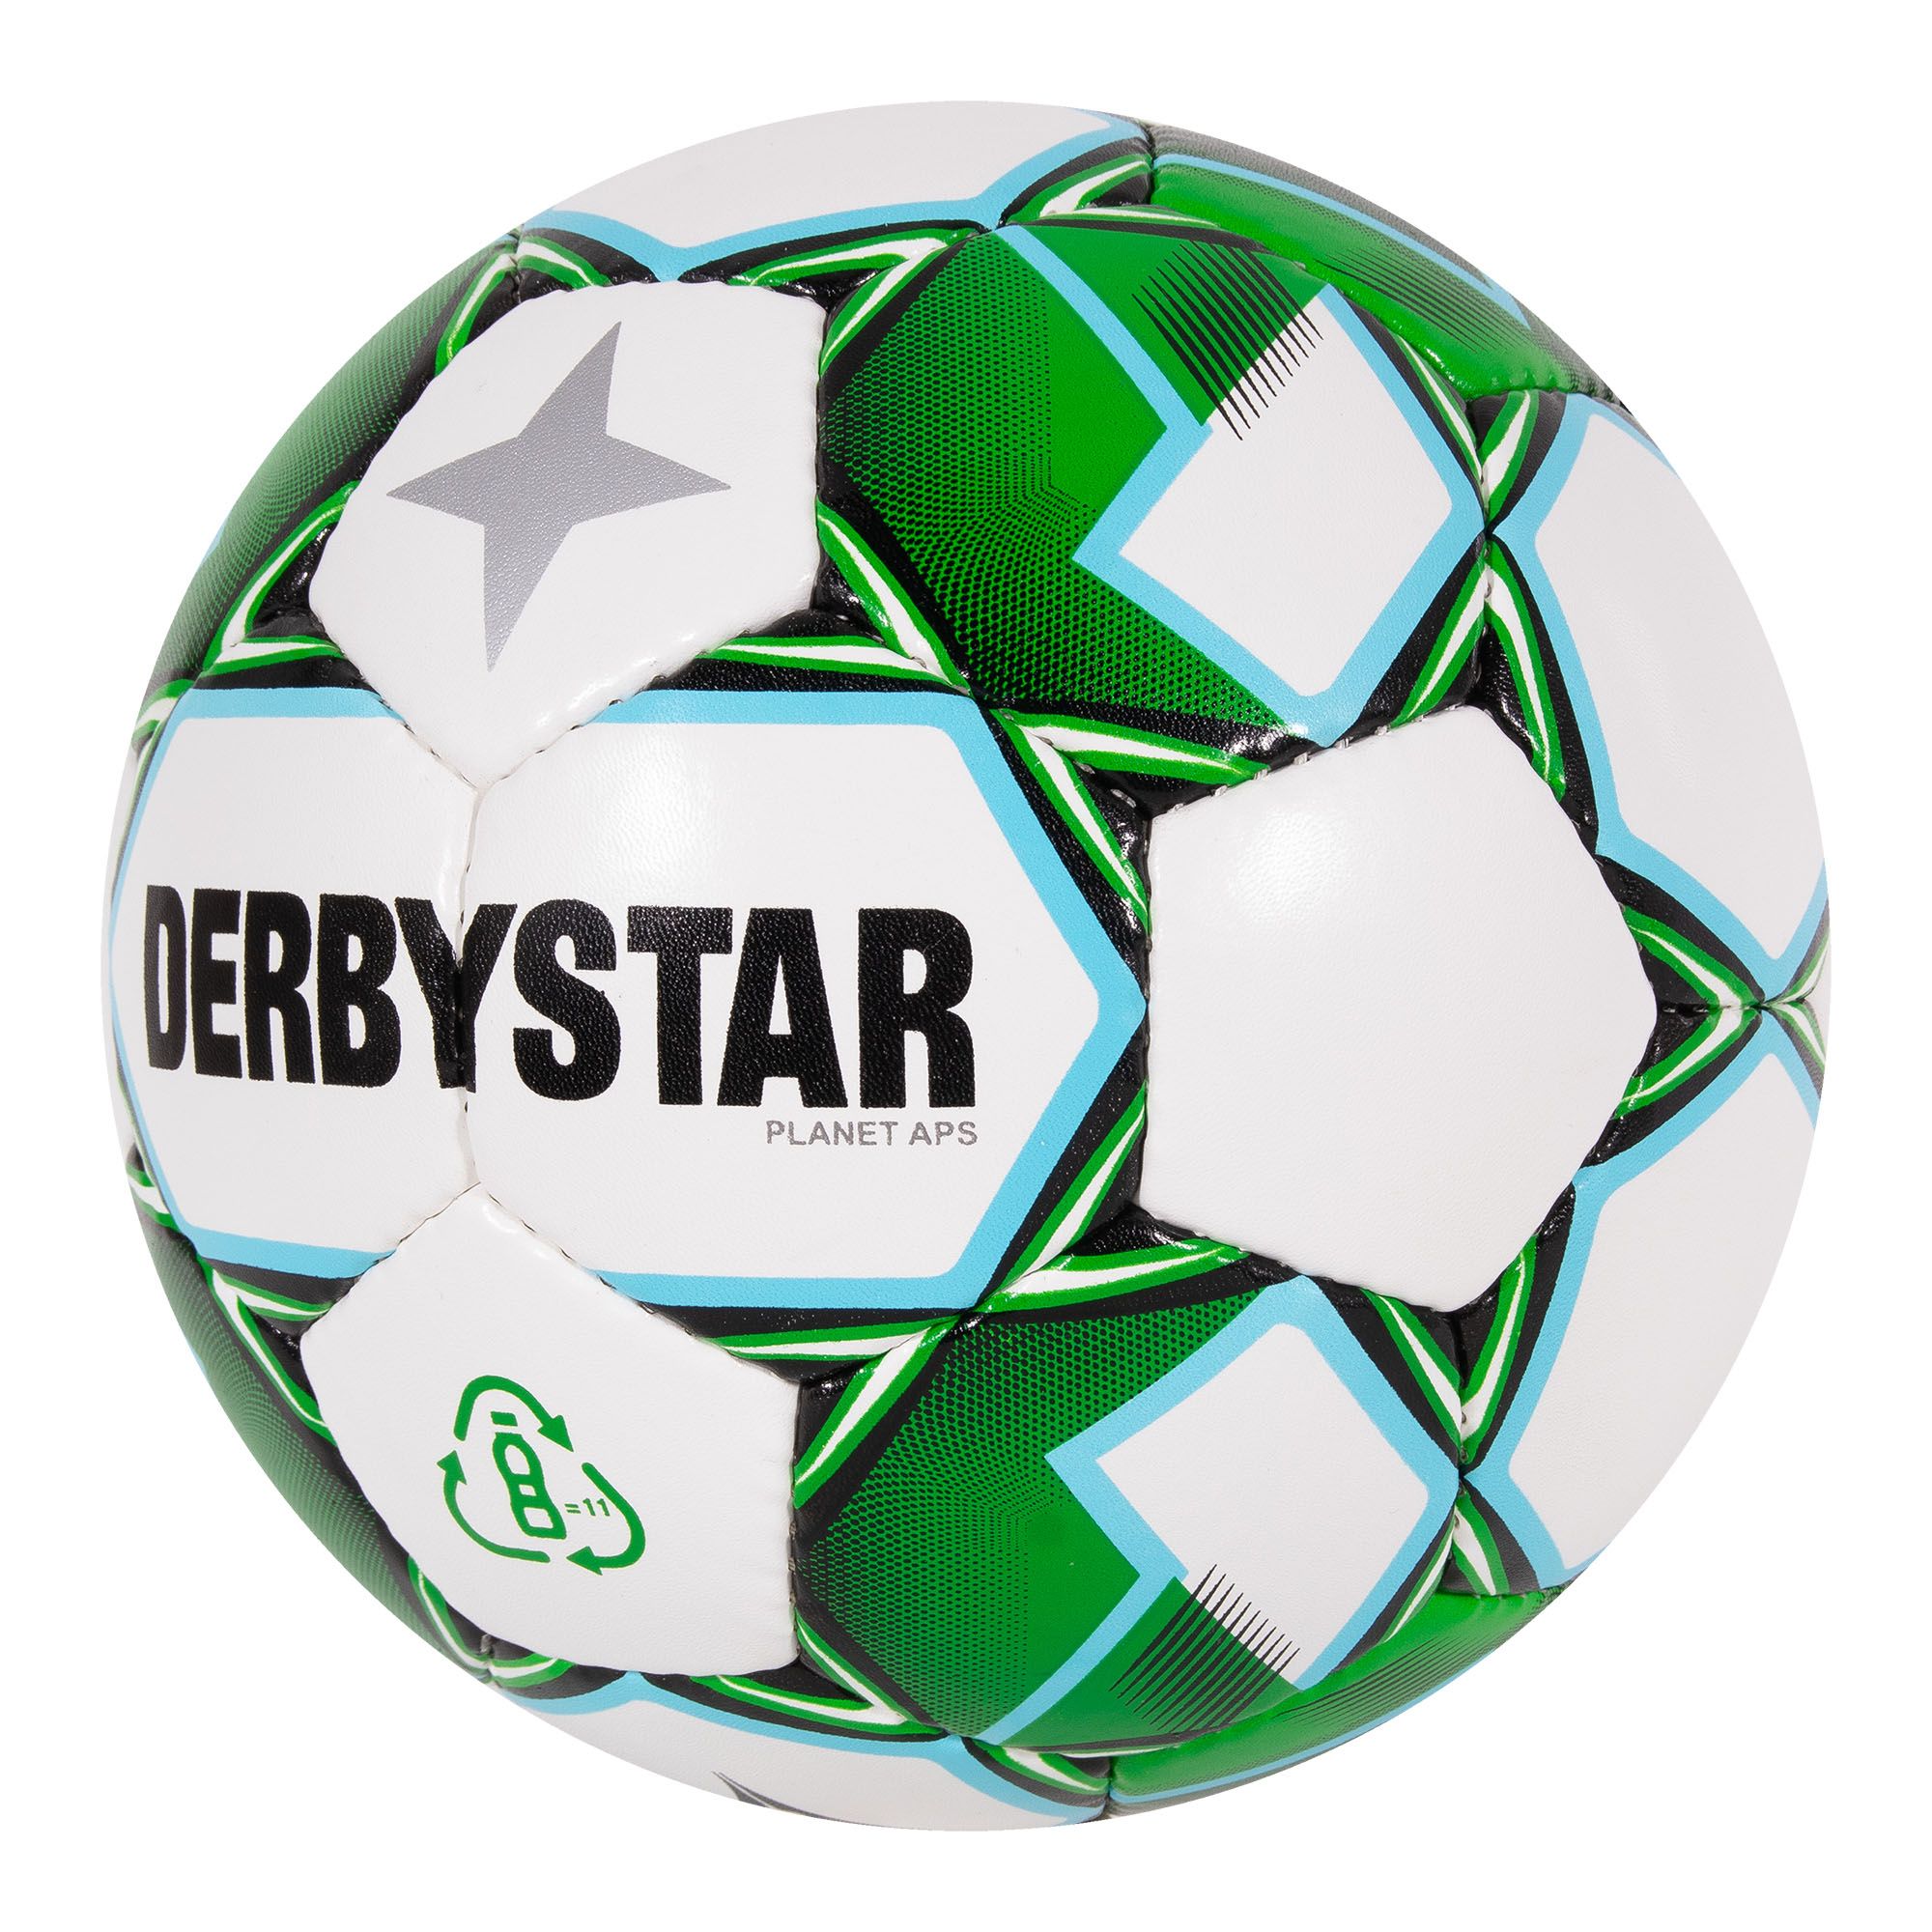 BKS | Derbystar voetballen | Derbystar Planet APS